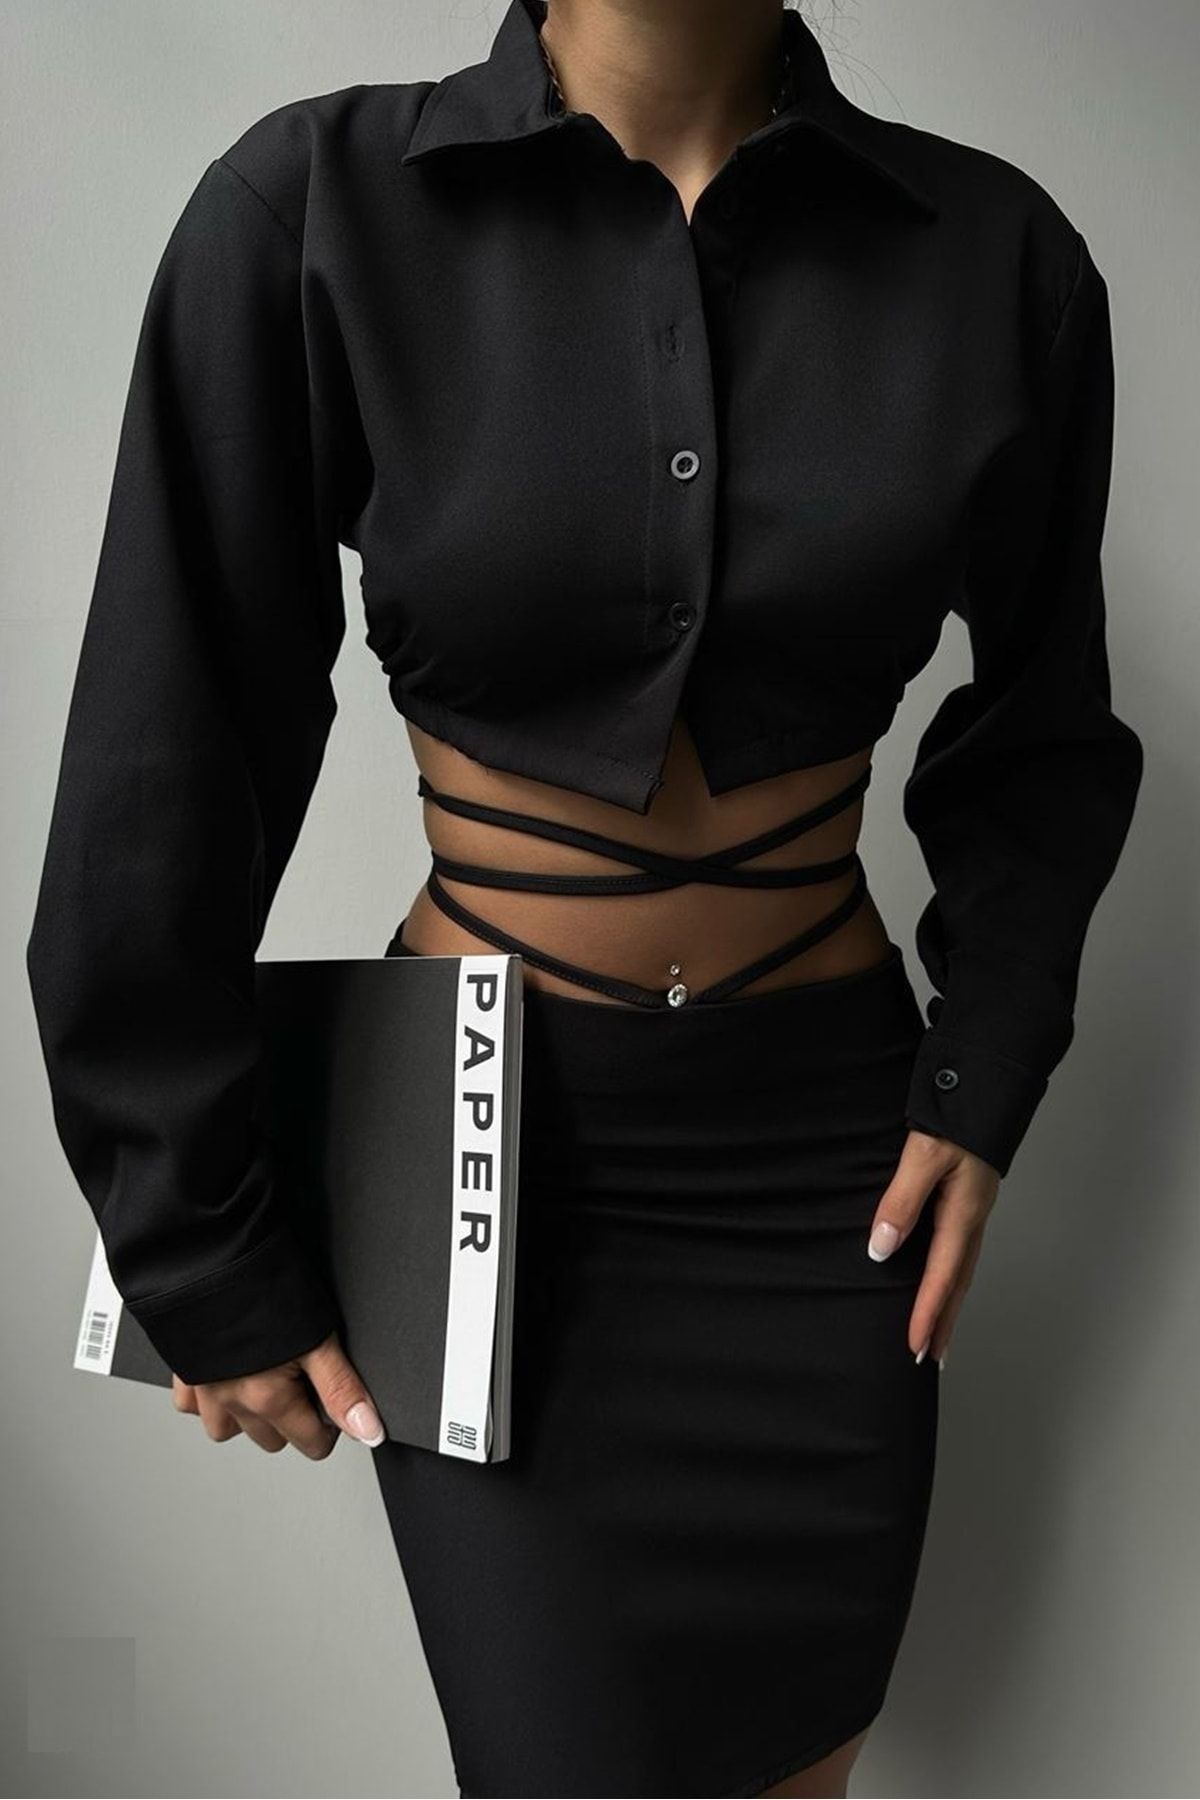 lovebox Kadın Siyah Gömlek Bel Bağlamalı Siyah Etek Ikili Takım 5367